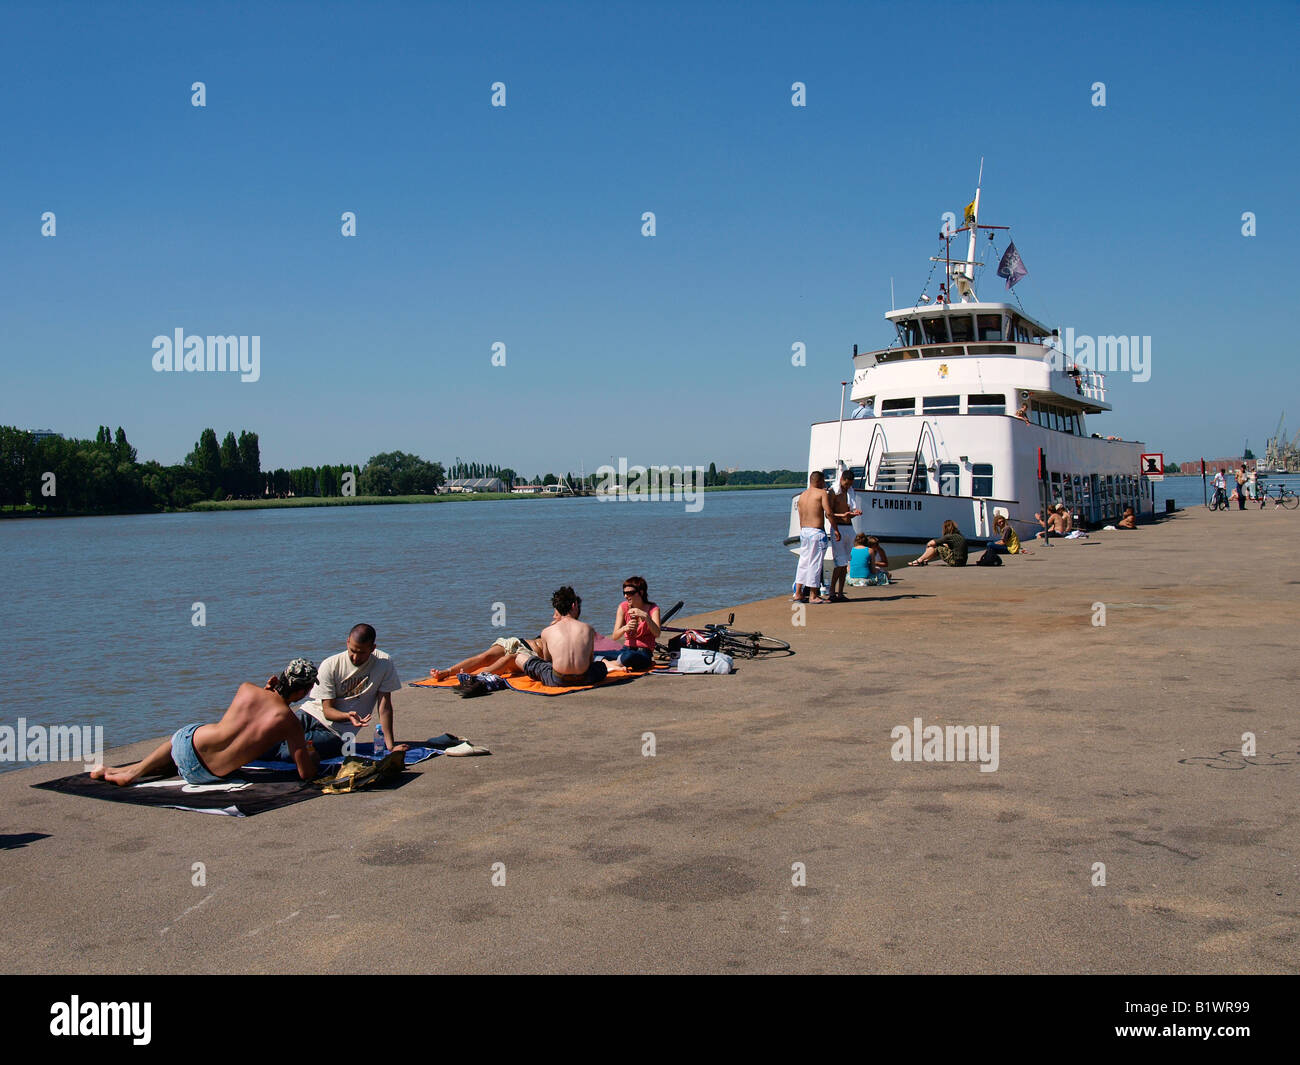 Relajante a lo largo de la orilla del río Escalda en un día muy caluroso en Amberes, Bélgica Foto de stock